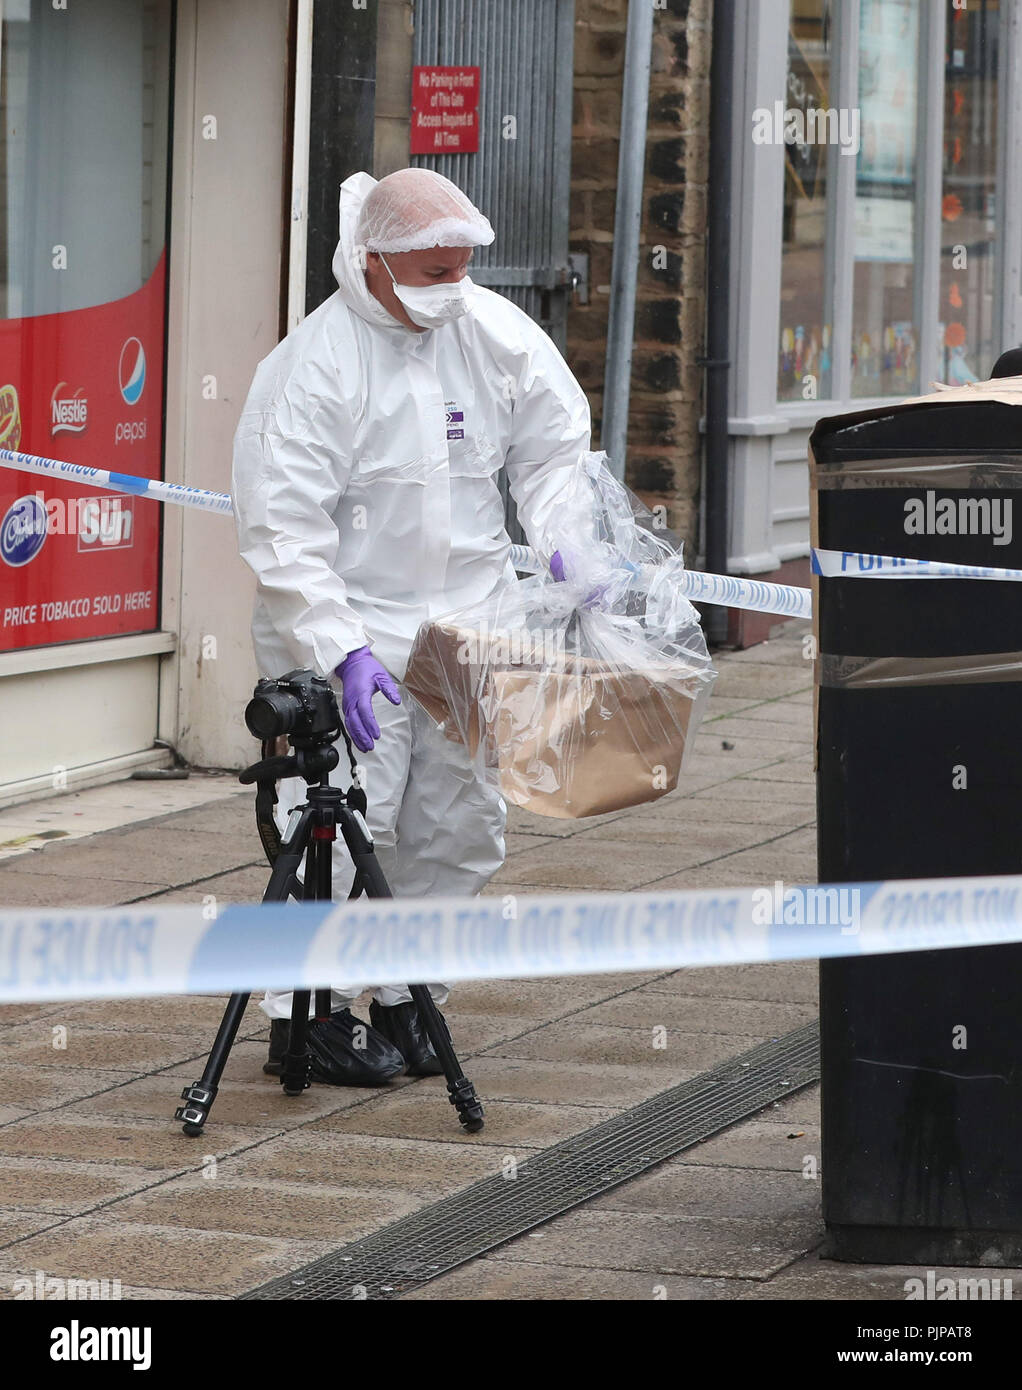 Eine forensische Officer prüfen ein Fach in der Schale Square in Barnsley Stadtzentrum, nach einem schweren Unfall. Stockfoto